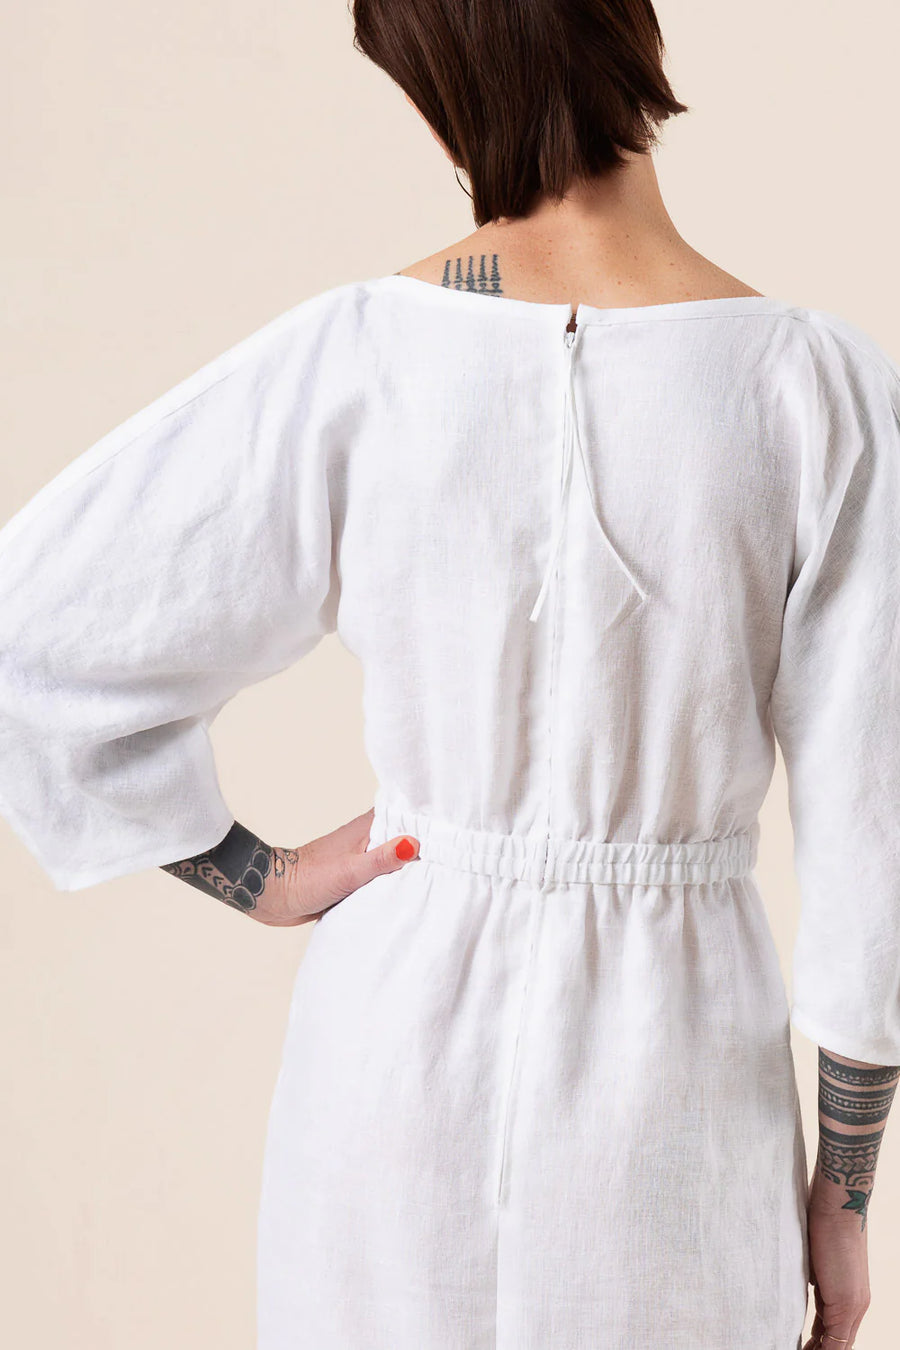 Closet Core - Jo Dress + Jumpsuit